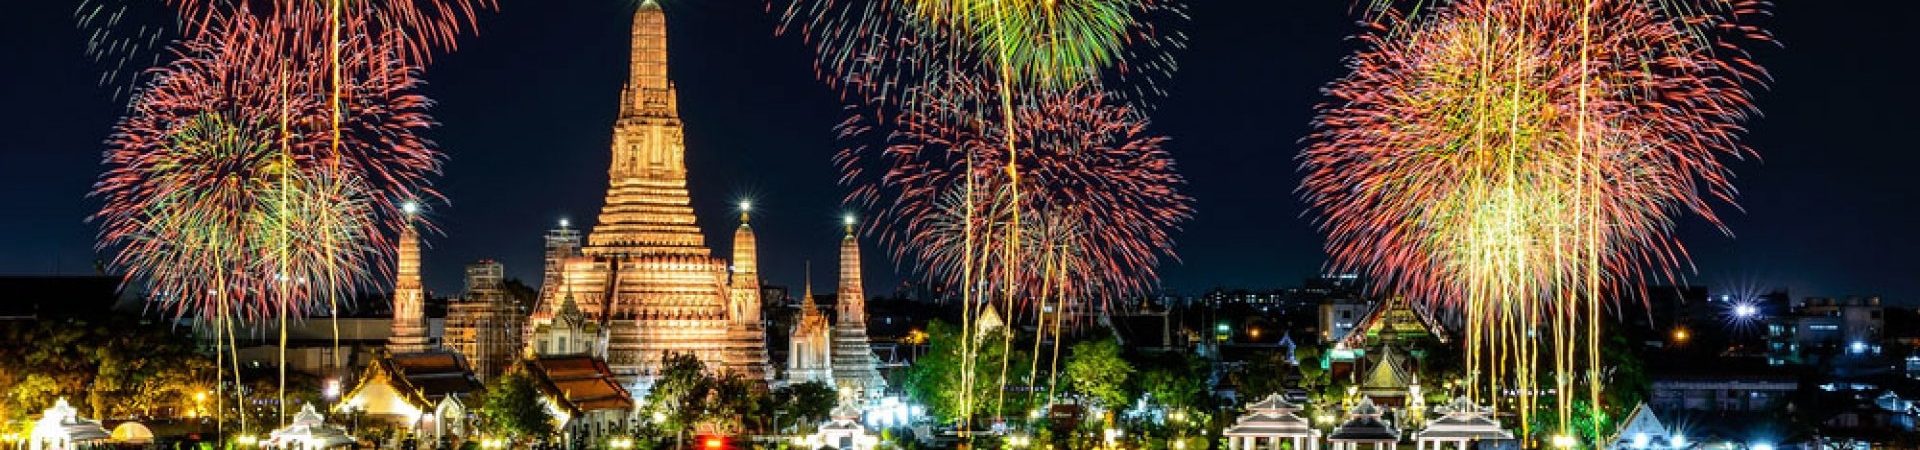 Revelion in Thailanda